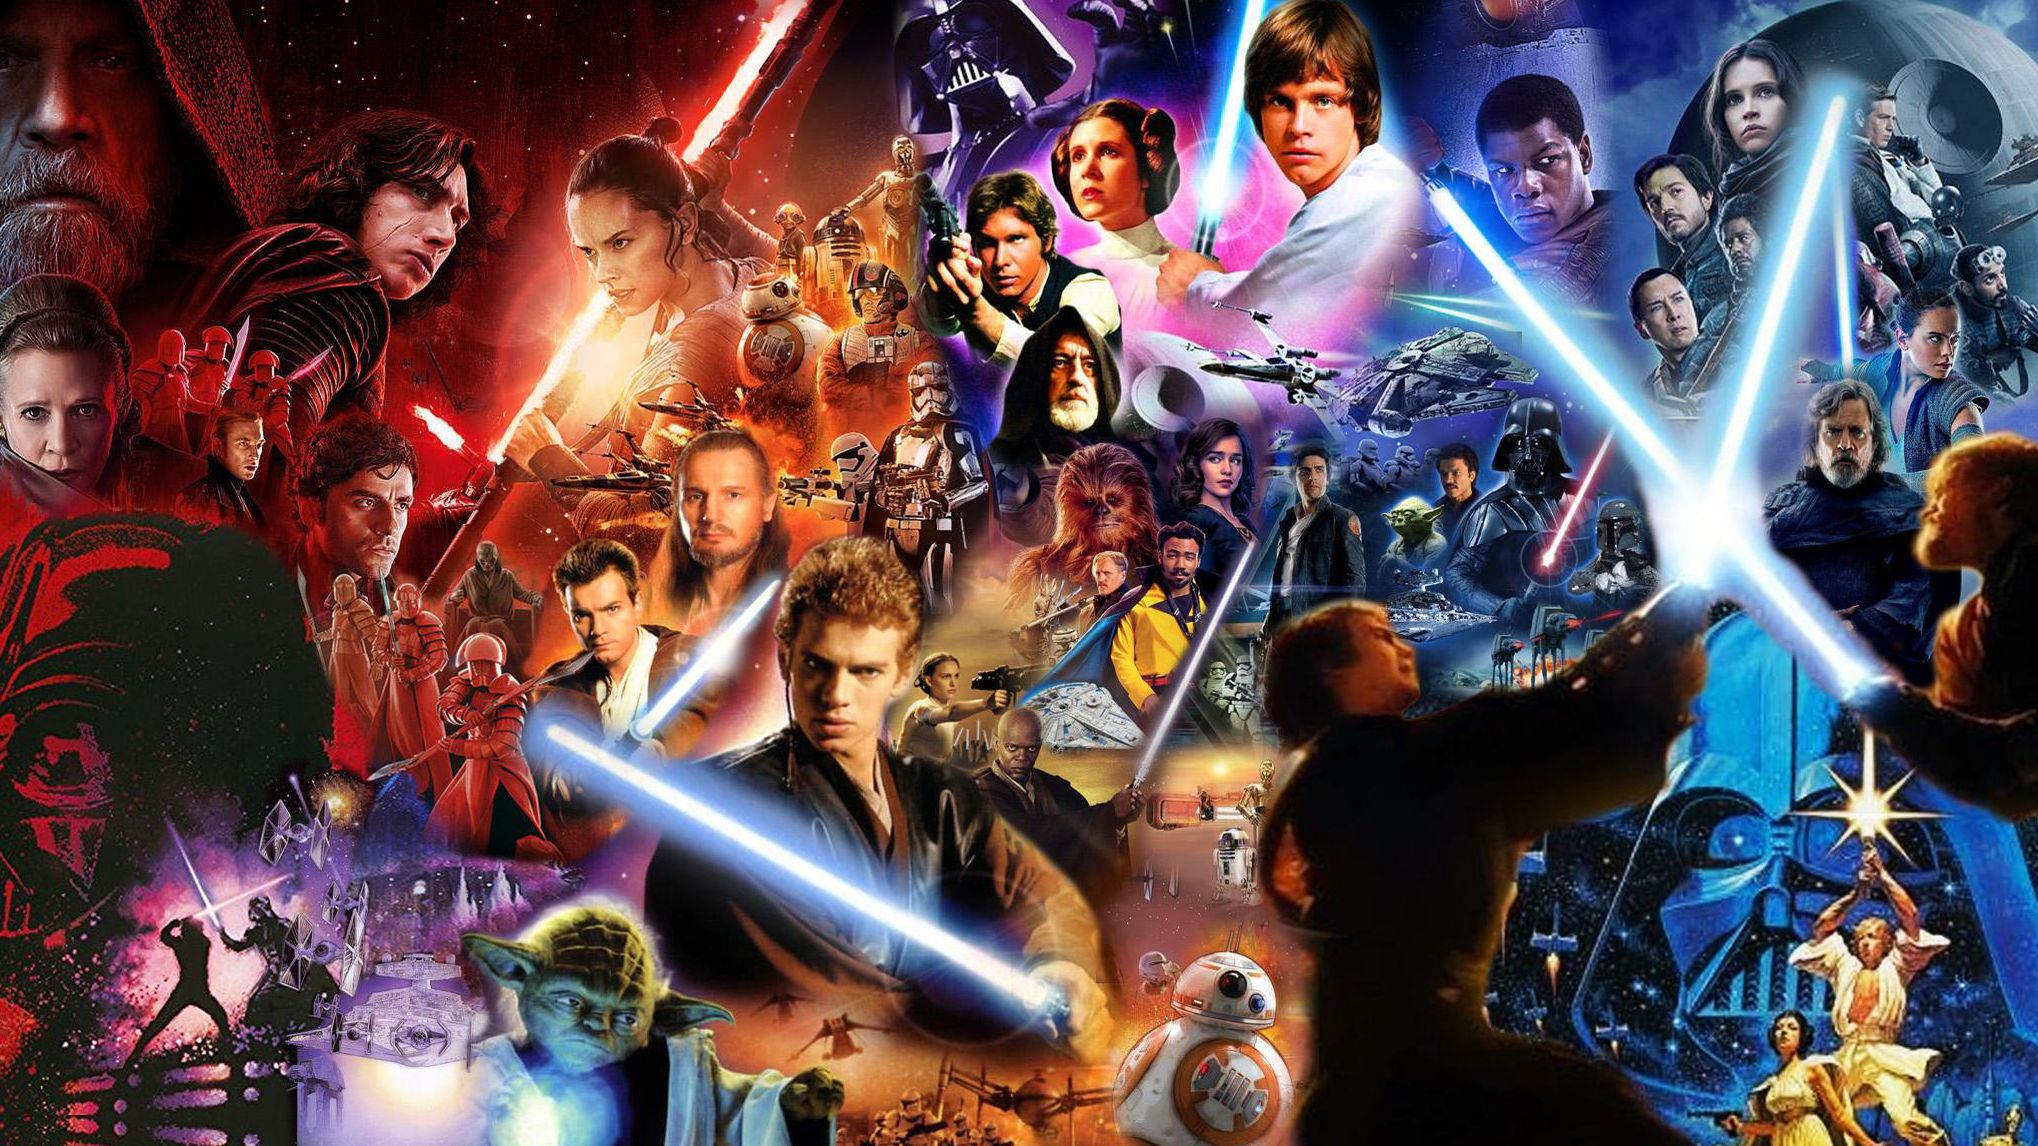 Star Wars: Como assistir tudo da franquia em ordem cronológica